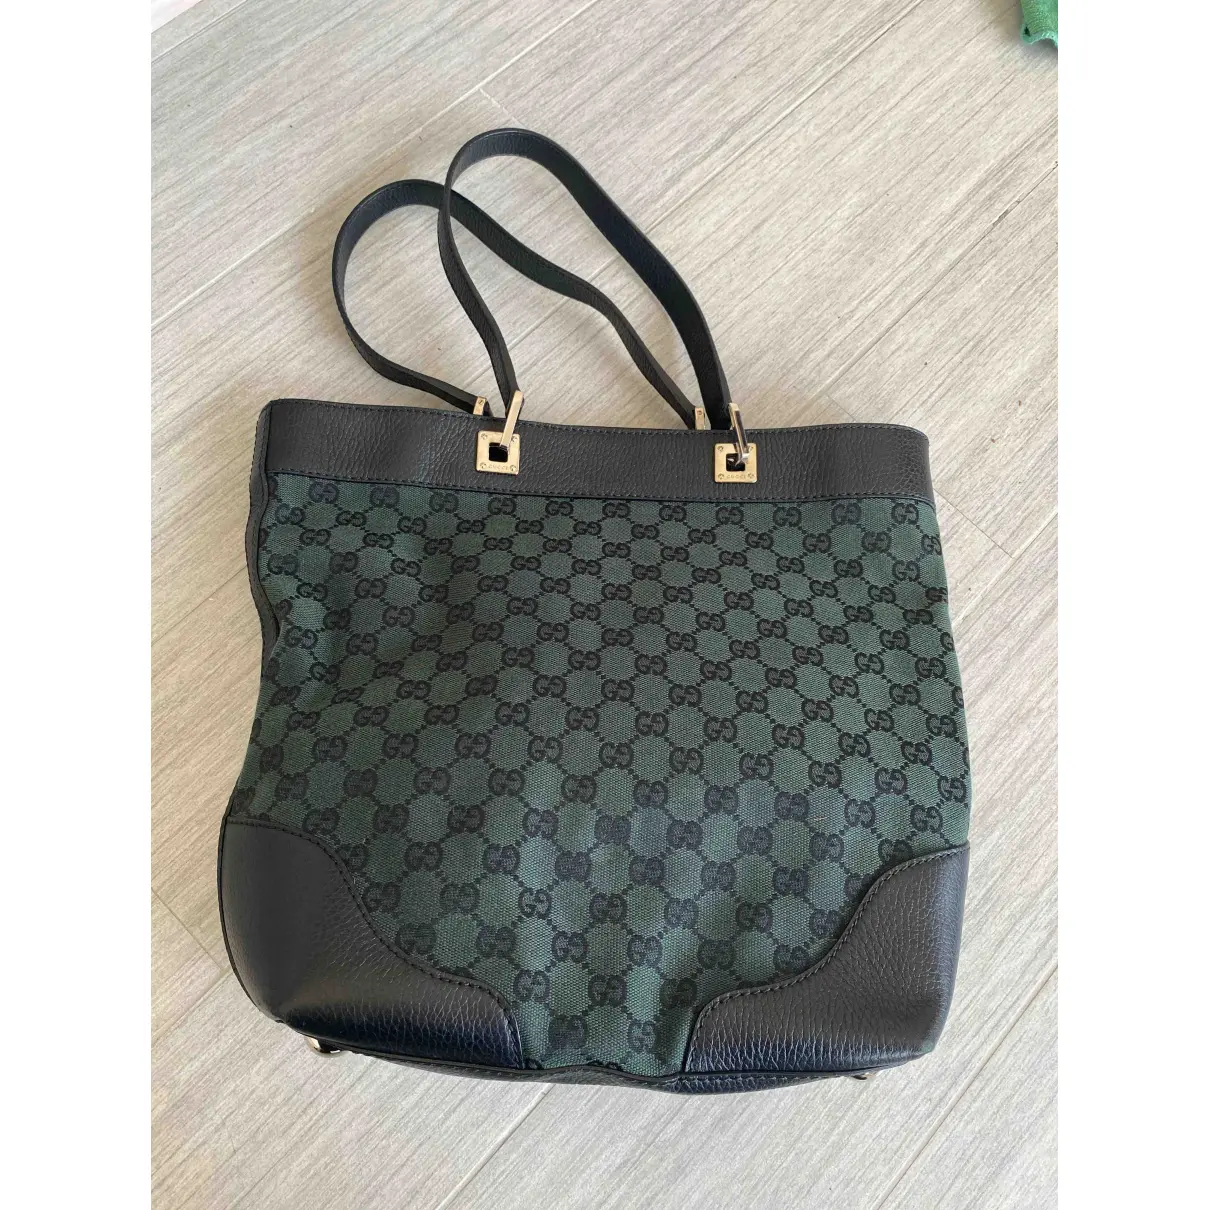 Buy Gucci Handbag online